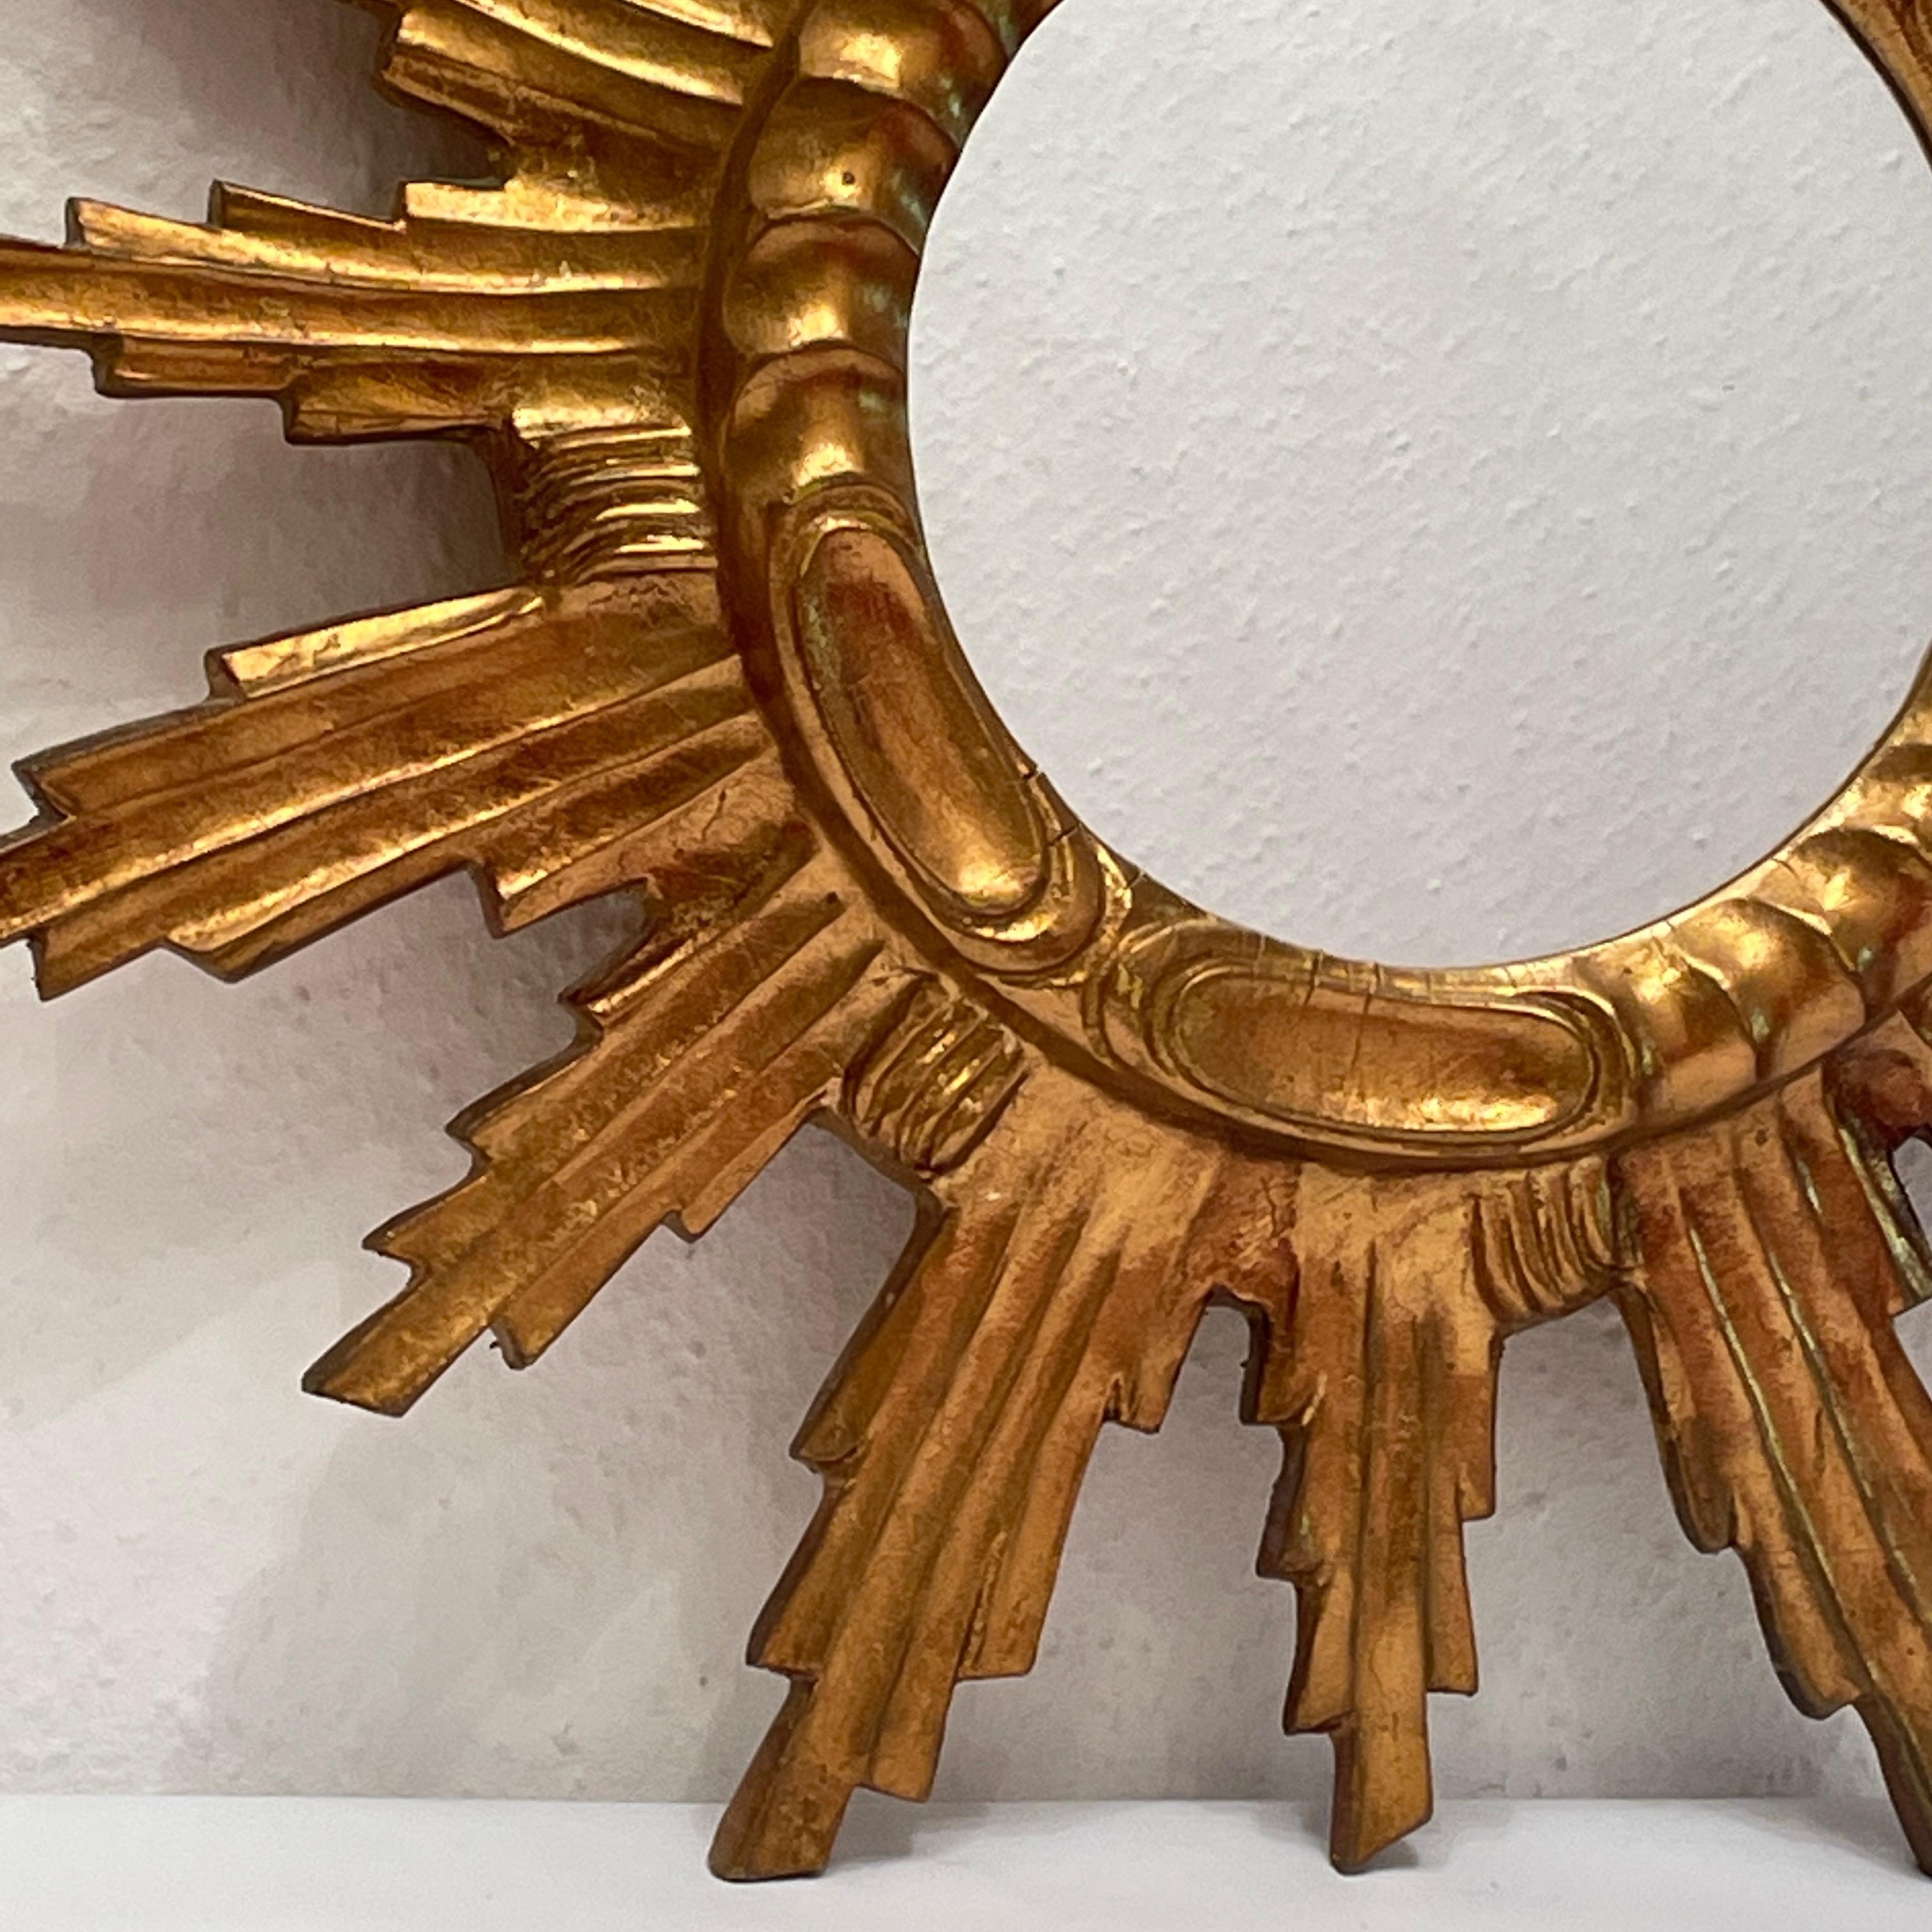 Un beau miroir en forme de starburst. Réalisé en composition dorée et en bois. Il mesure environ 22,13